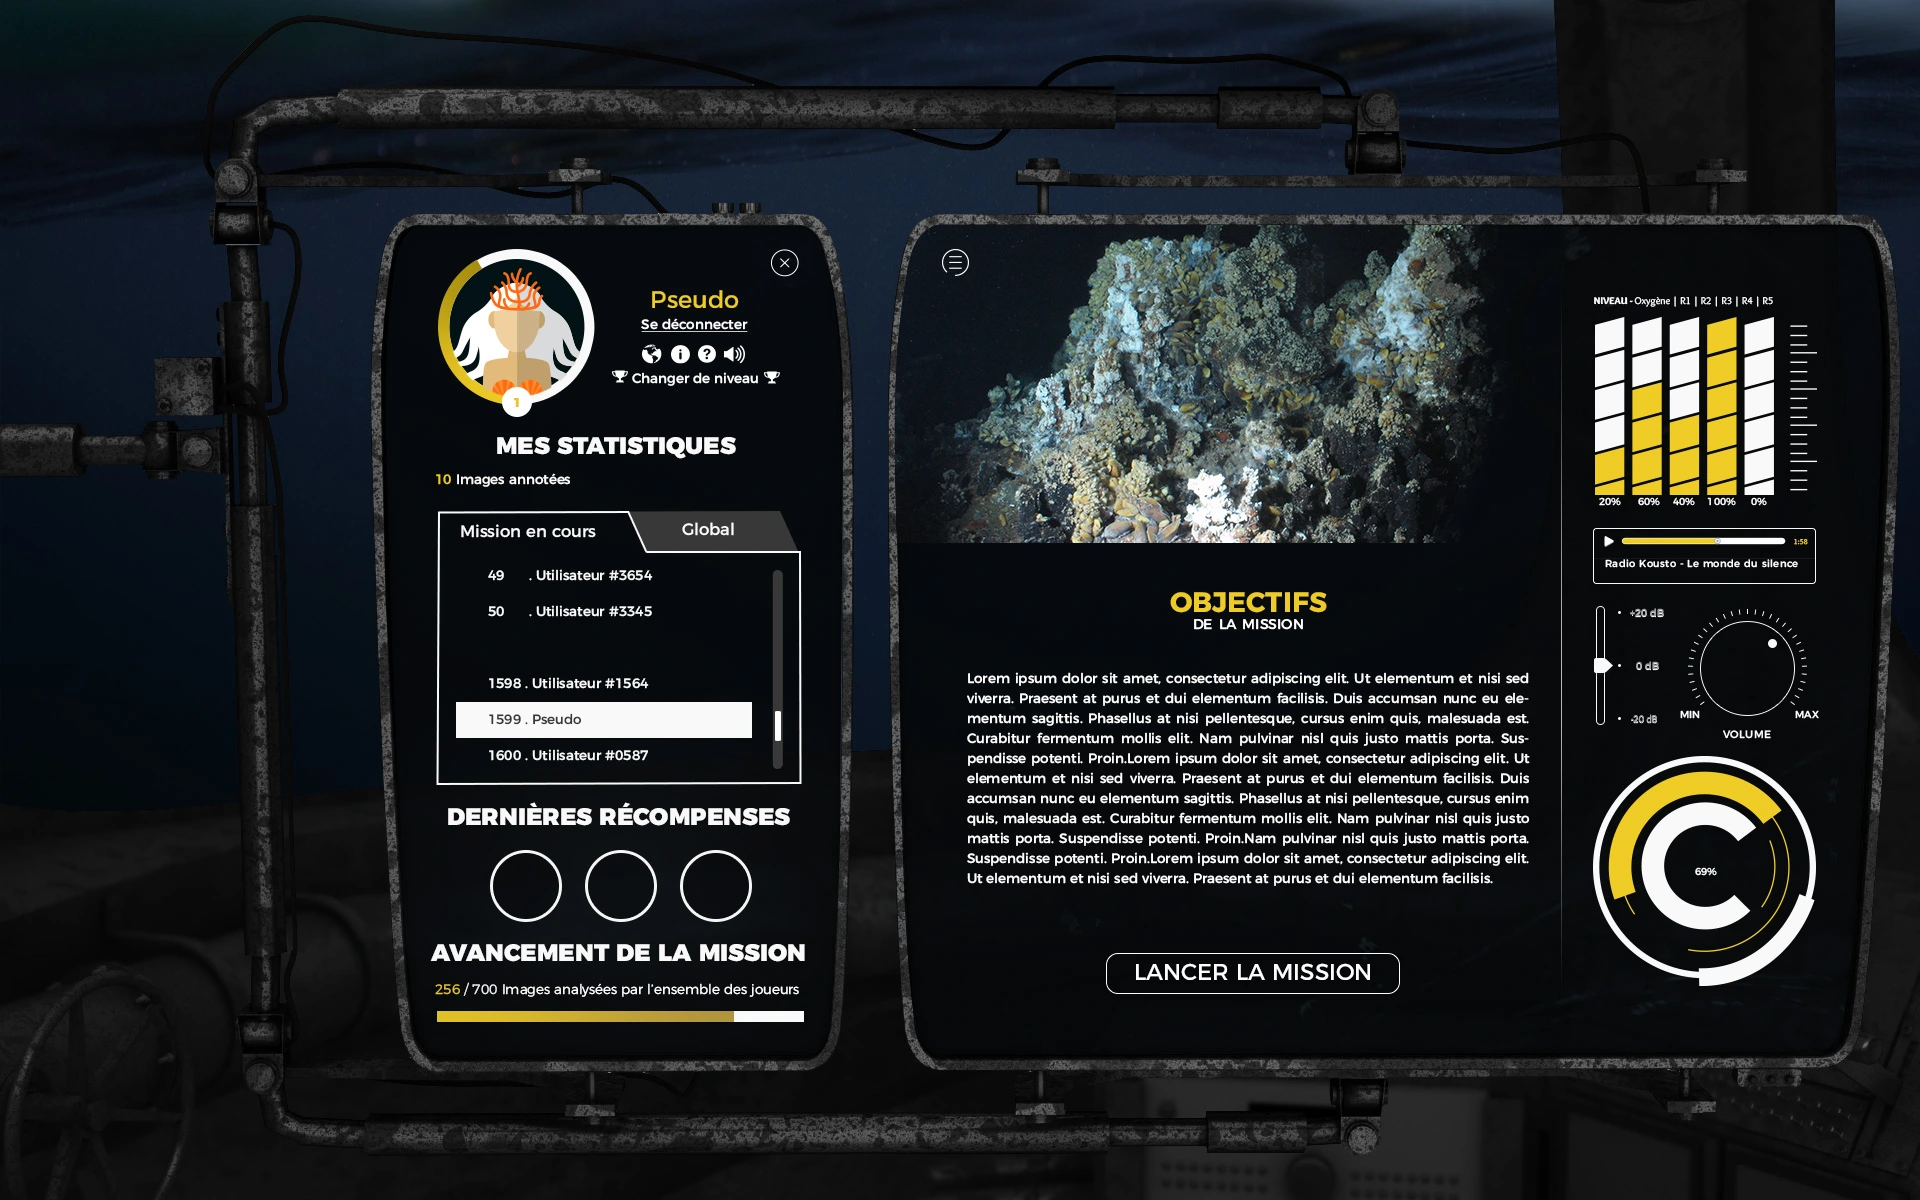 Ifremer Nicolas Roullet Marjolaine Matabos Brest Deep Sea Spy Espion des Grands Fonds Marjo DSS océanopolis interface graphique UI UX